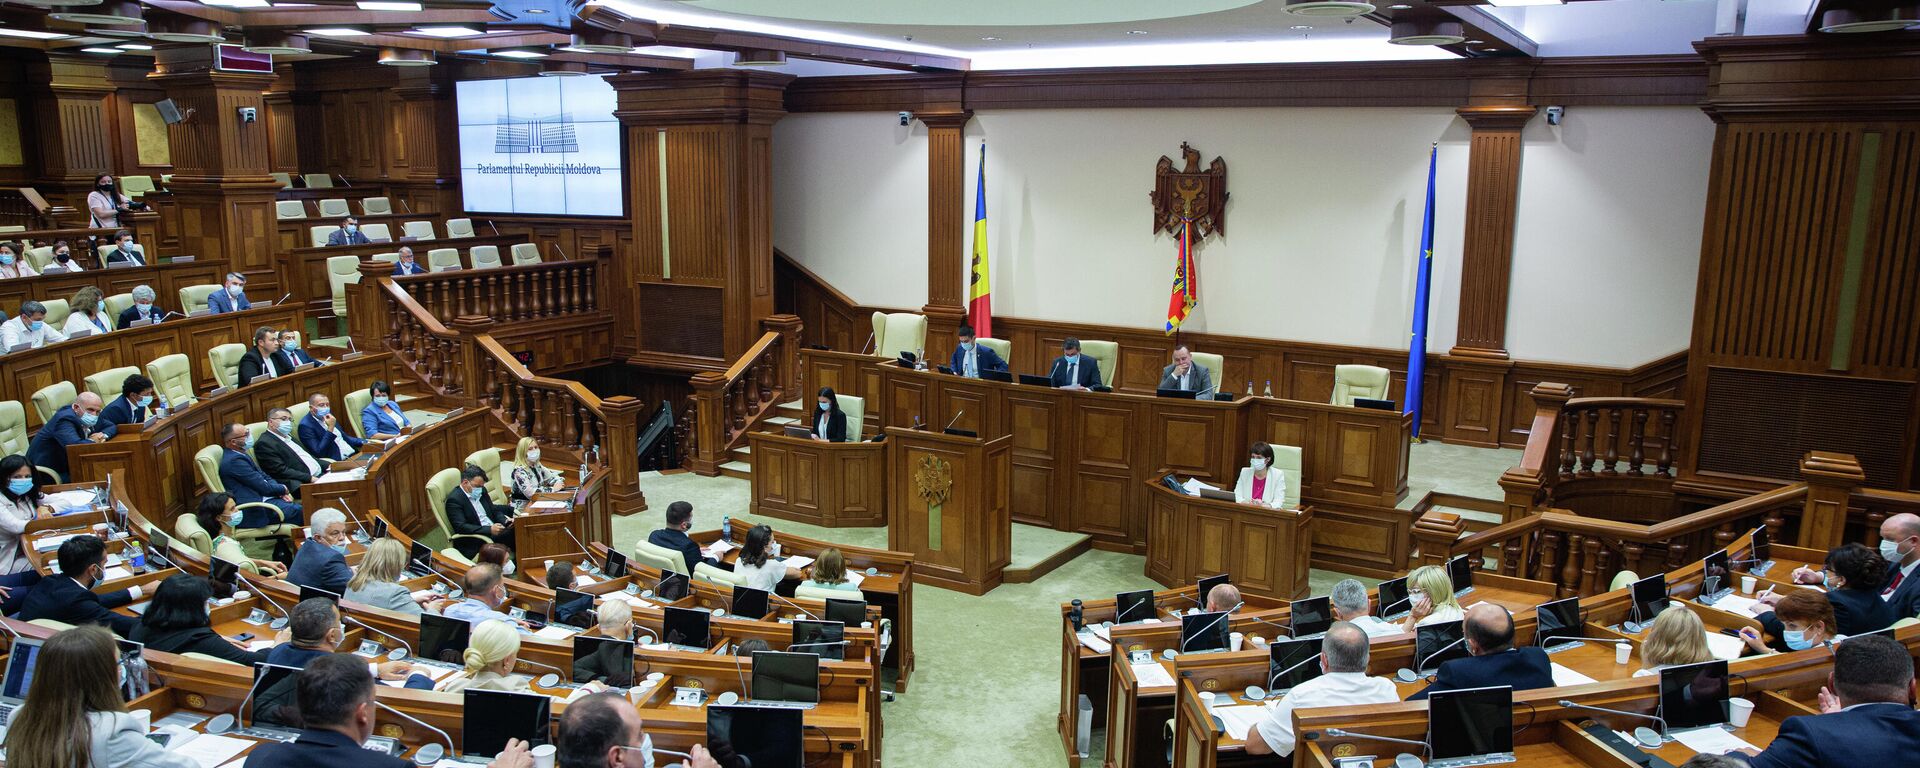 Deputați în Parlamentul Republicii Moldova  - Sputnik Moldova, 1920, 18.11.2021